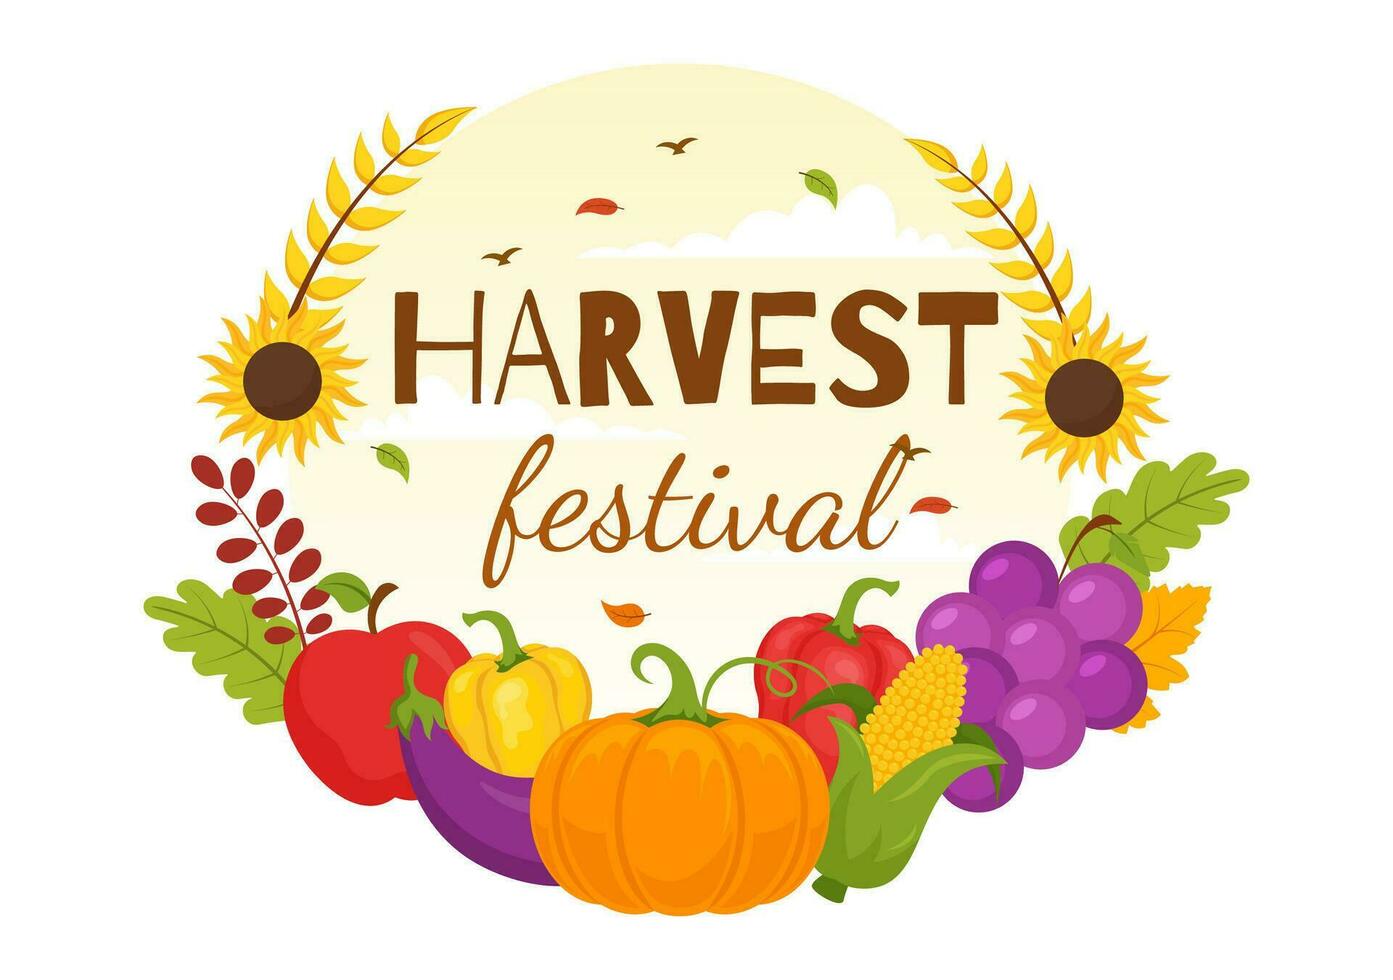 contento cosecha festival vector ilustración de otoño temporada antecedentes con calabazas, arce hojas, frutas o vegetales en plano dibujos animados plantillas